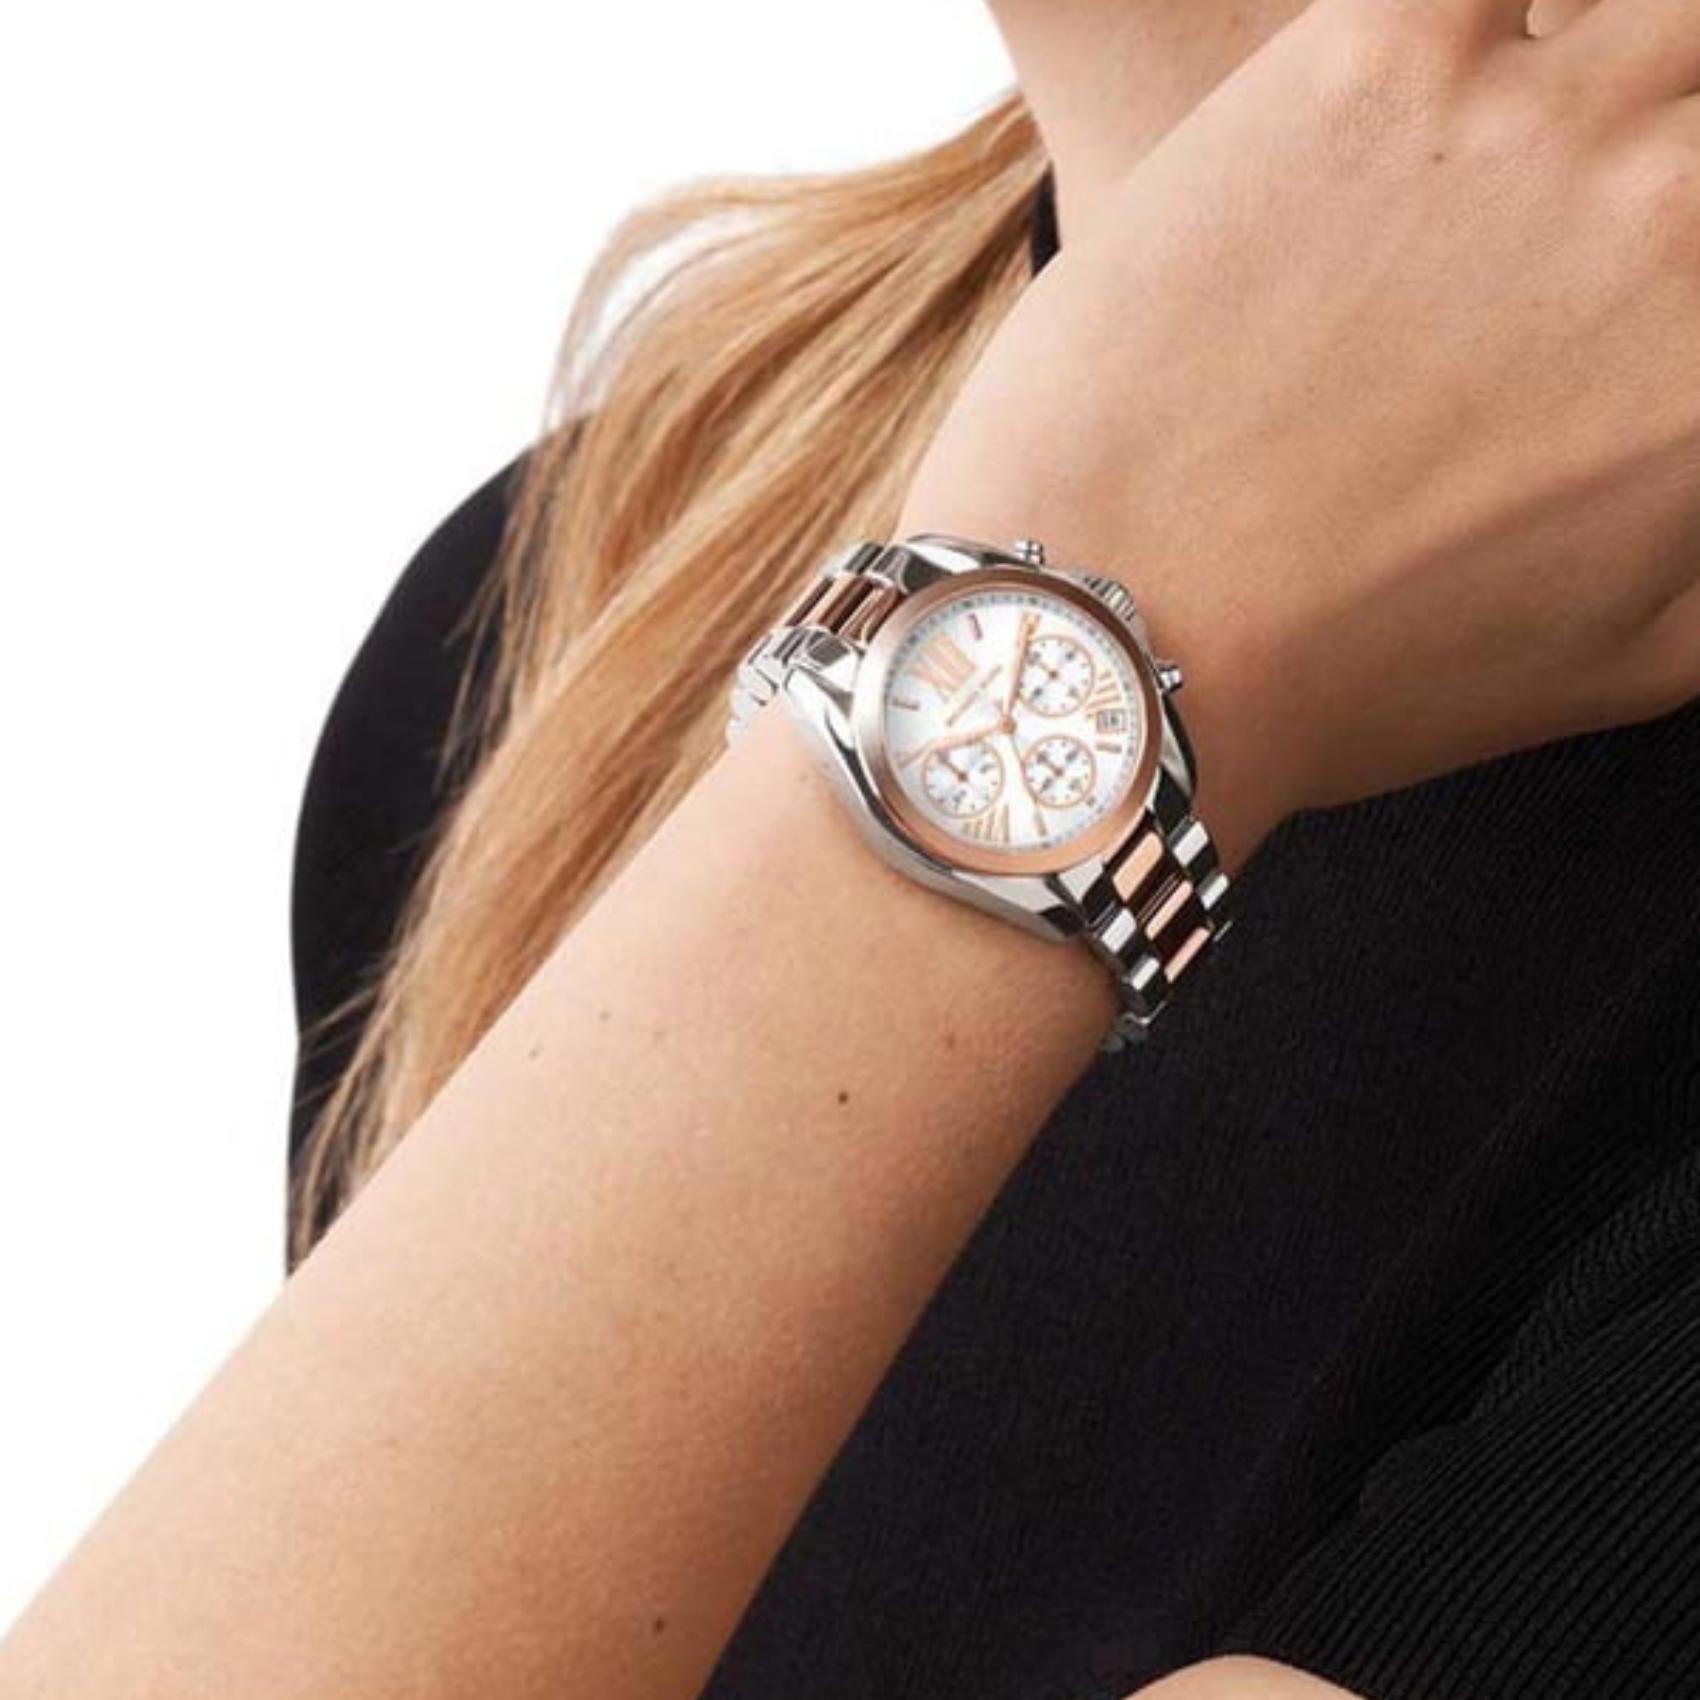 Γυναικείο ρολόι Michael Kors Mini Bradshaw MK7258 χρονογράφος με δίχρωμο ατσάλινο μπρασελέ σε ασημί-ροζ χρυσό χρώμα, στρογγυλό ασημί καντράν με ημερομηνία και στεφάνι 36mm.